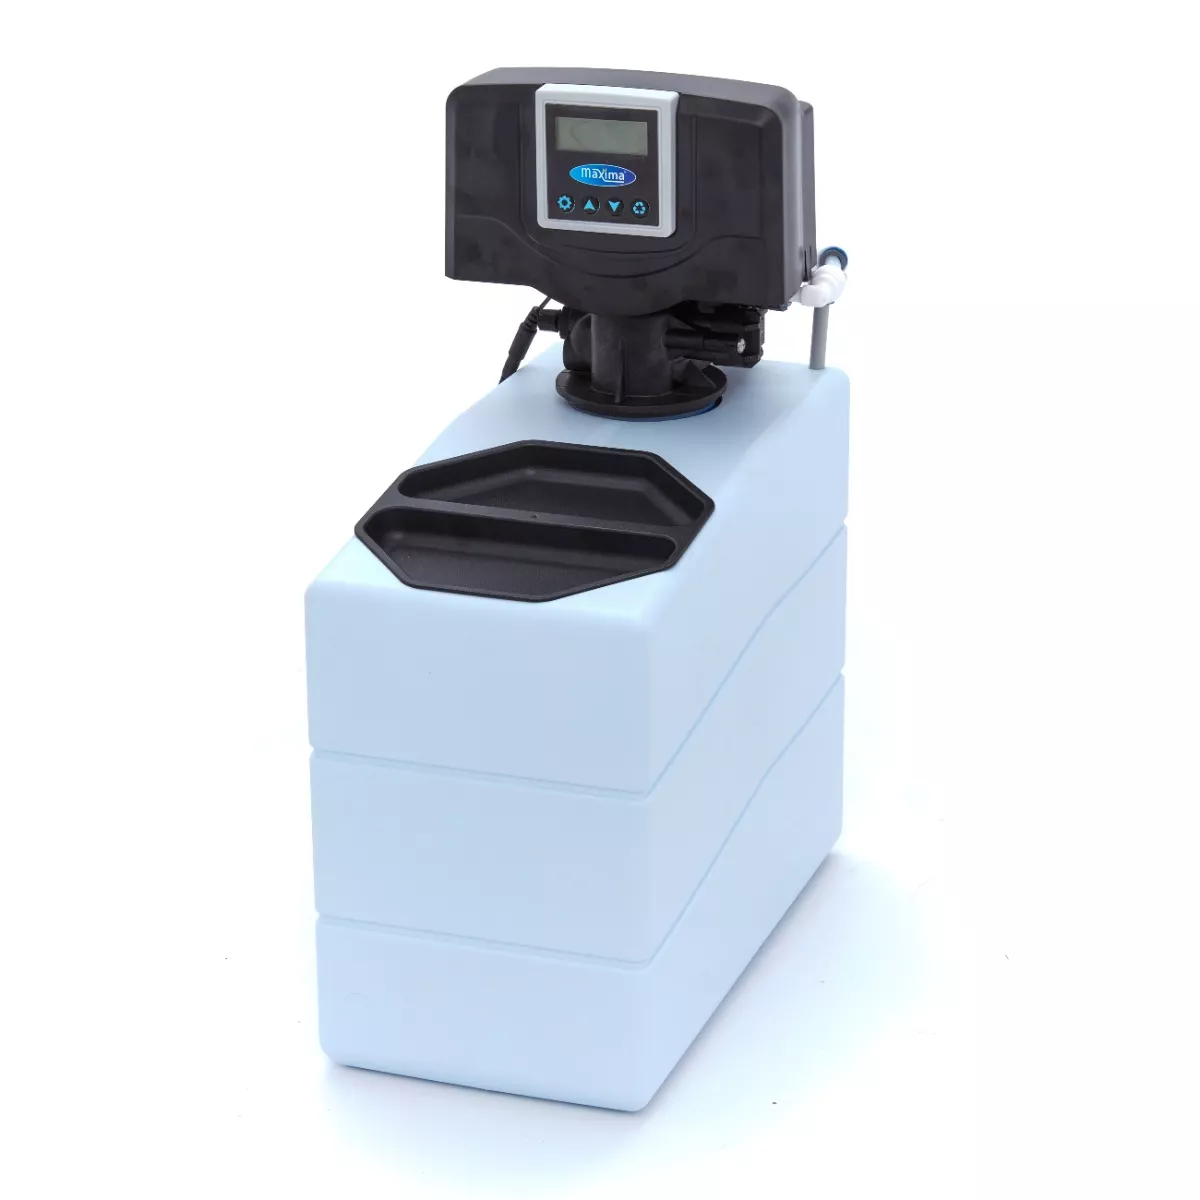 Automatikus vízlágyító - vízkőmentesítő - 5L gyanta - digitális kijelző | Maxima 09351100